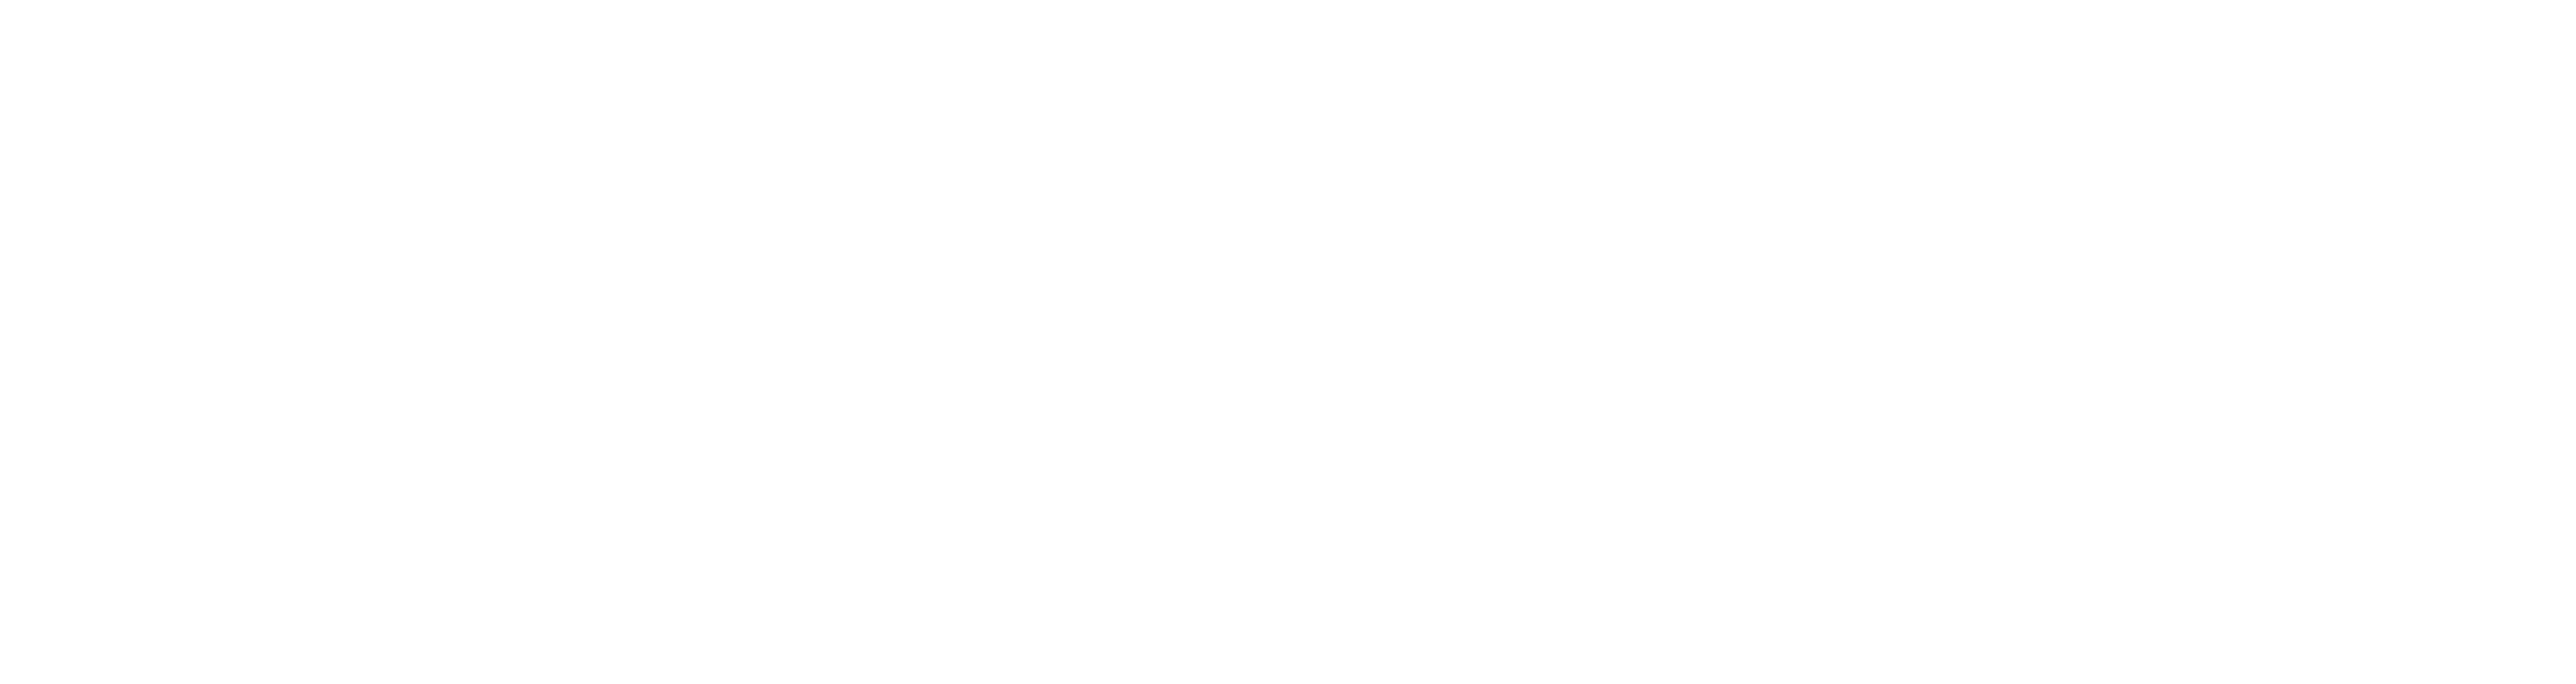 AniCura Fana Dyreklinikk logo